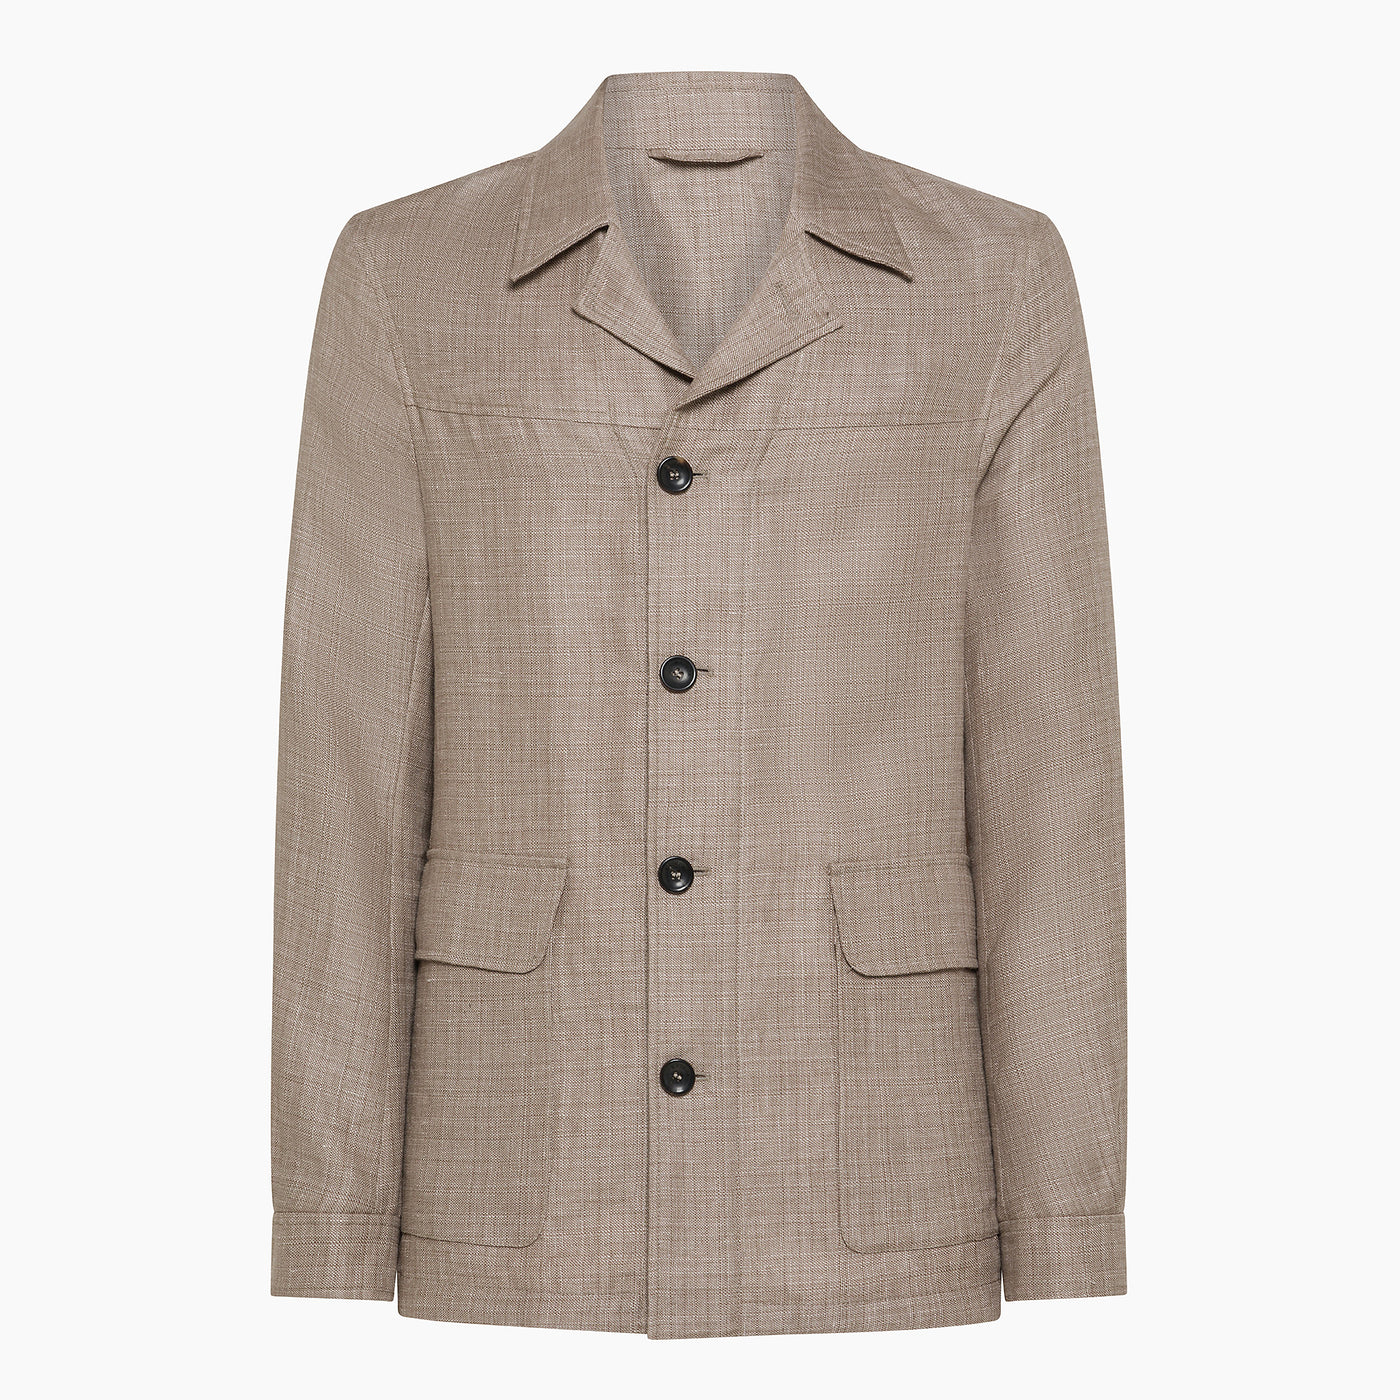 Leandro Easy Jacket in Panama Linen & Wool